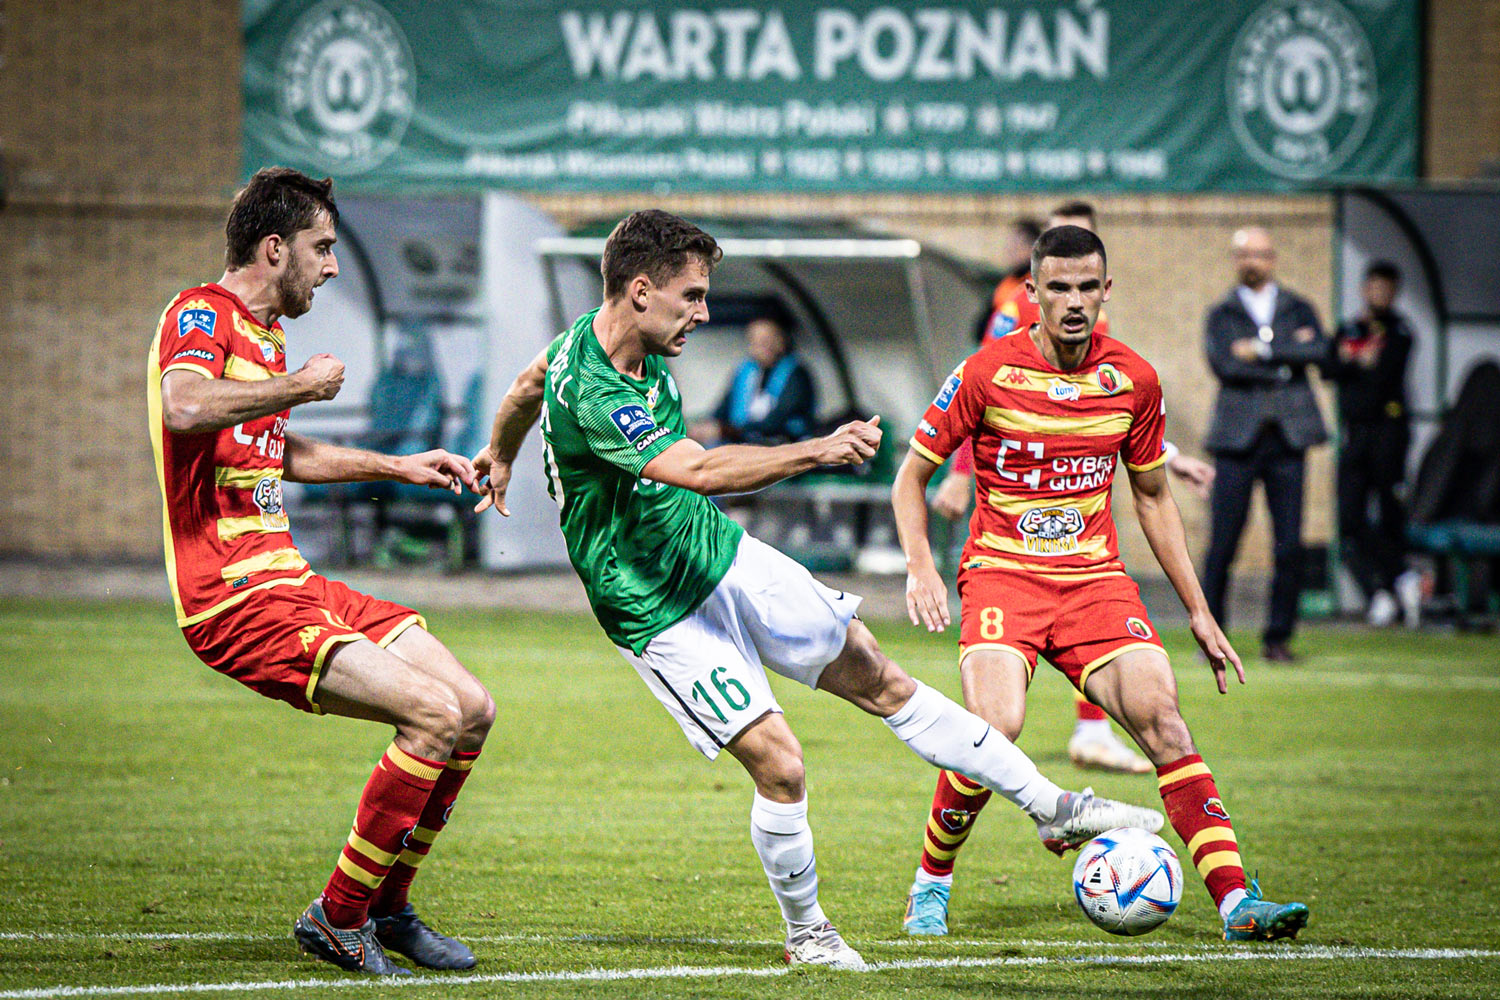 Warta Poznań - Jagiellonia Białystok 2:0. Miguel Luis, skrót meczu, wideo